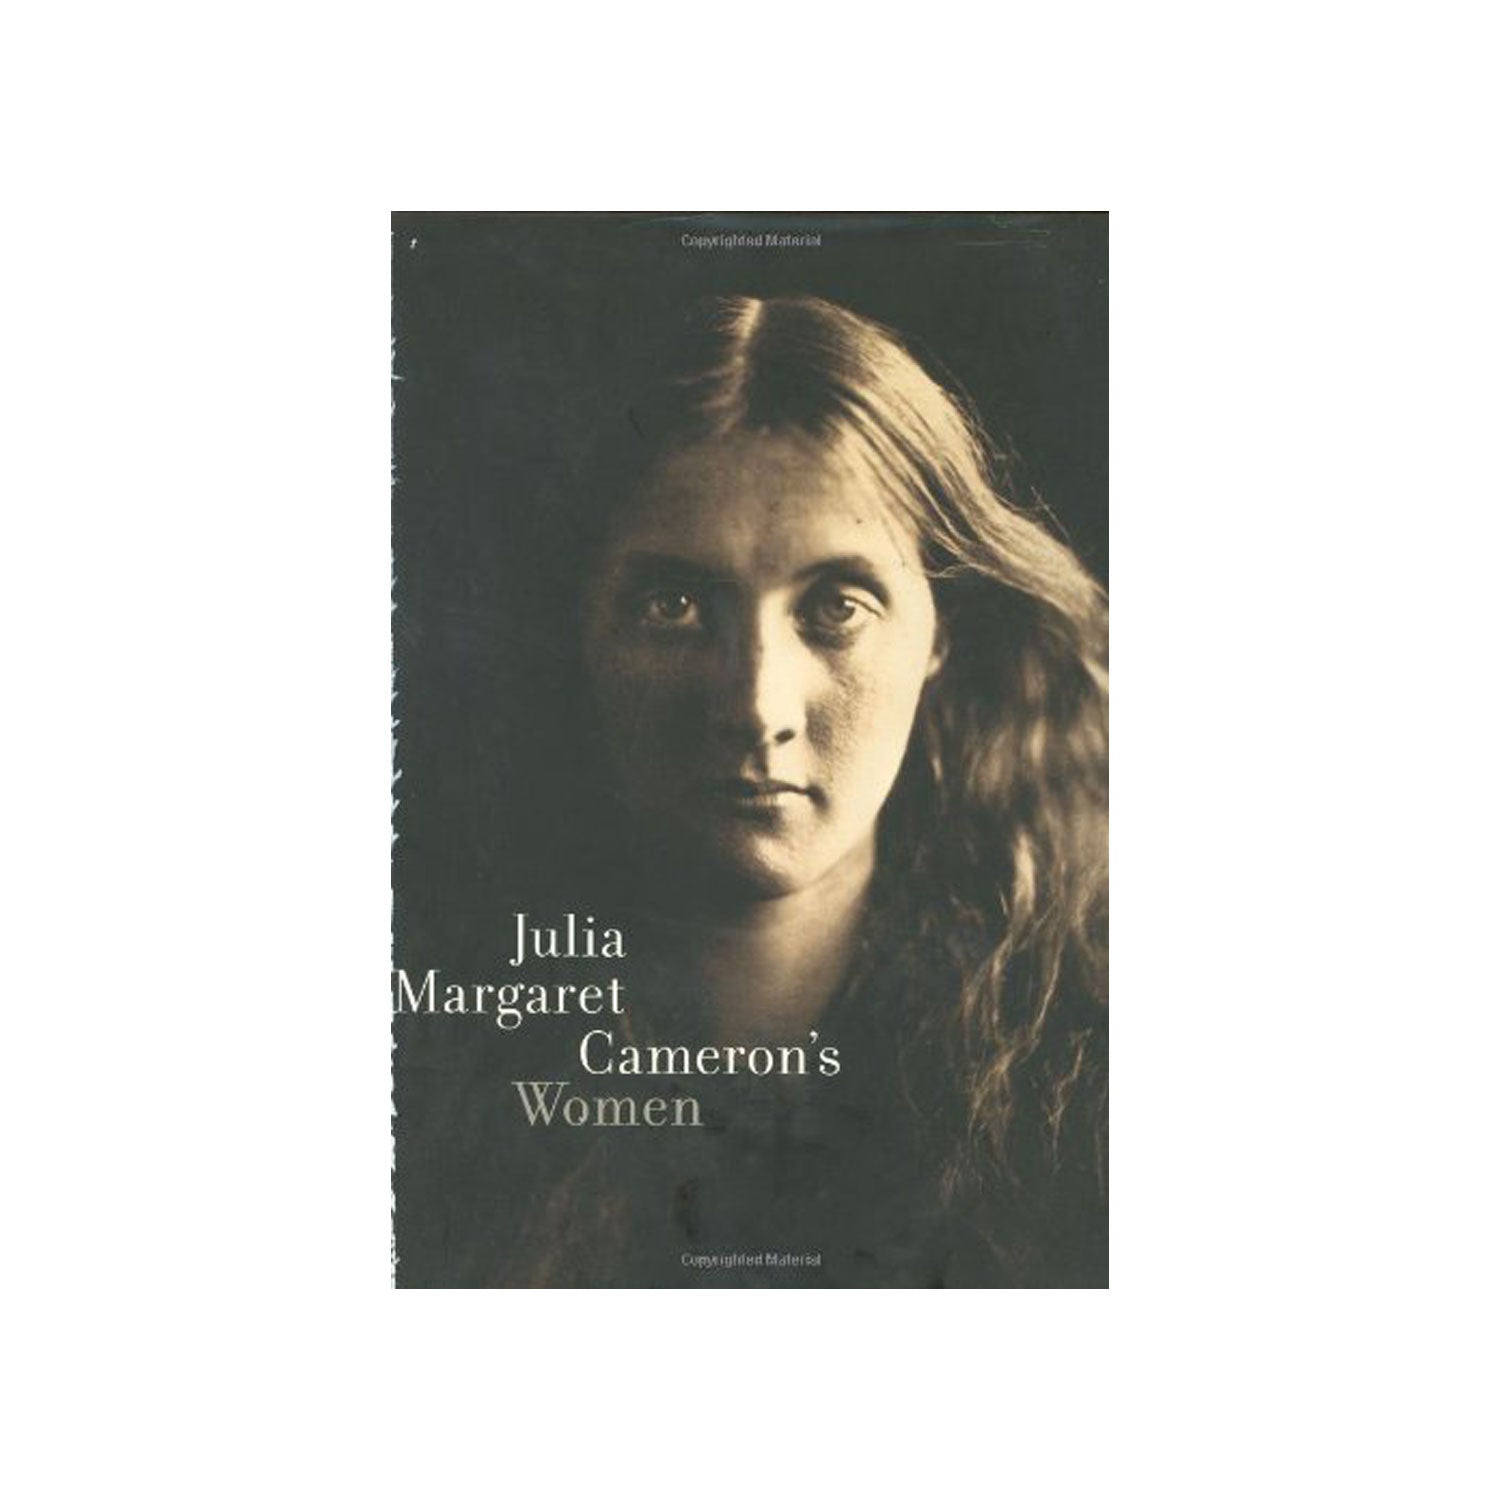 Julia Margaret Cameroon′s Women Photo Museum Ireland